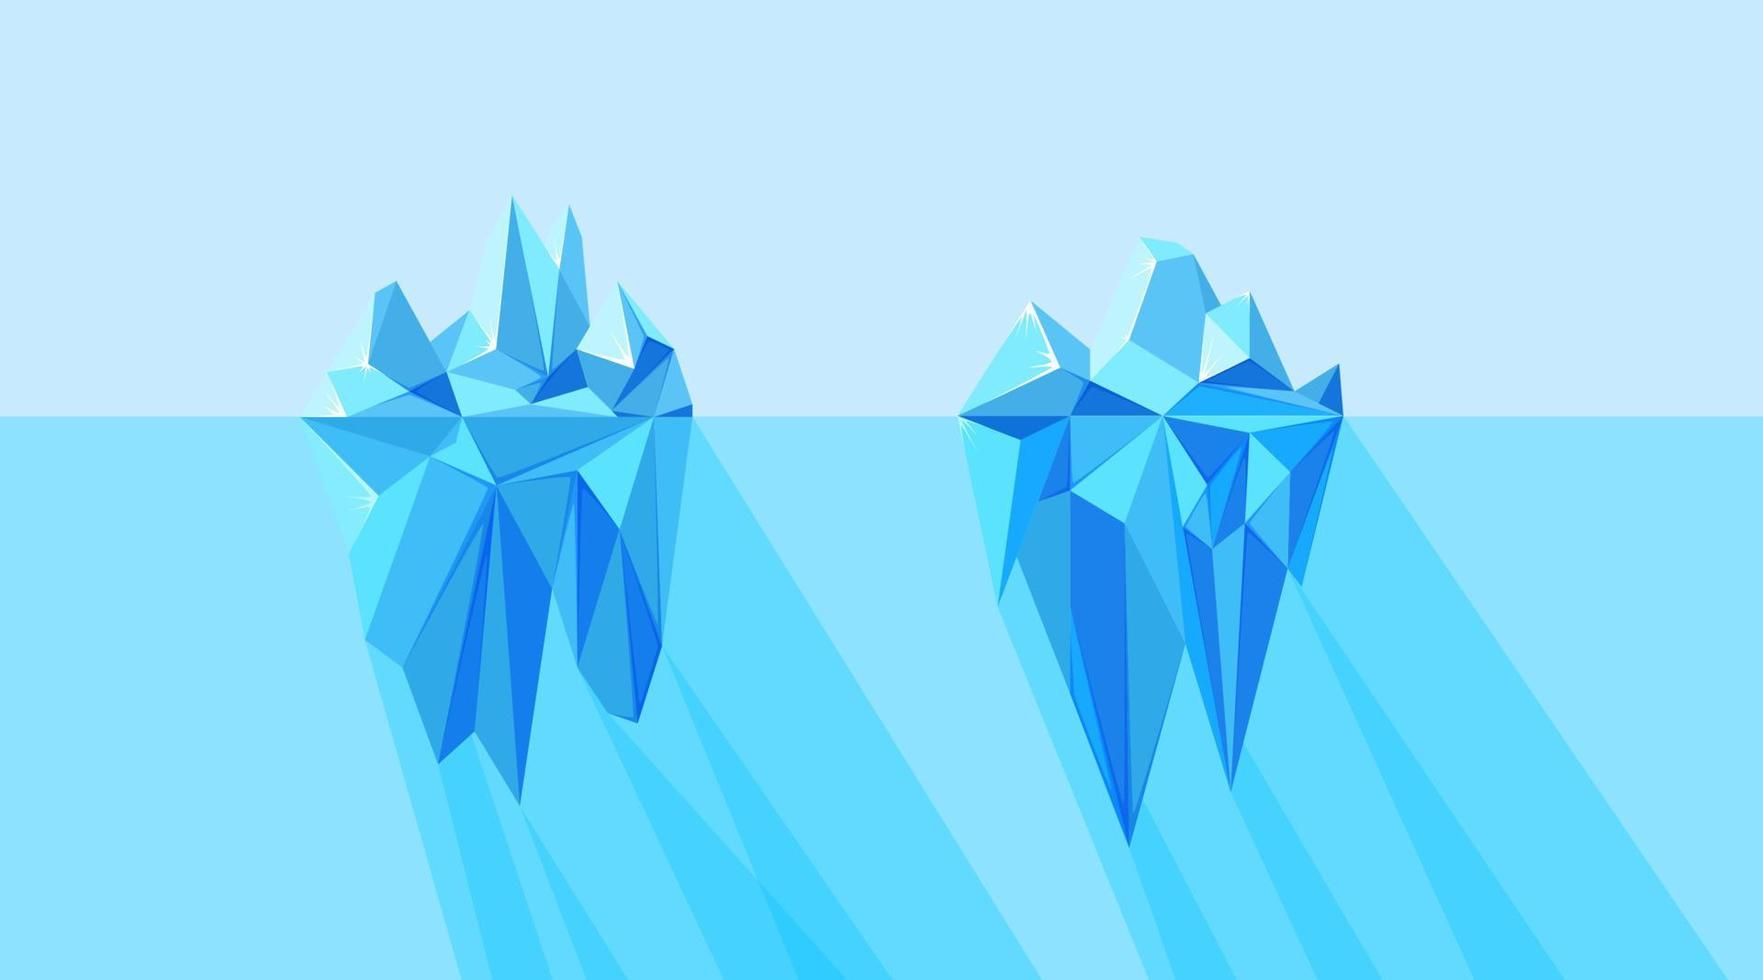 icebergs partes visibles y ocultas flotando en el mar ártico. paisaje norte con iceberg geométrico poligonal. ilustración vectorial vector